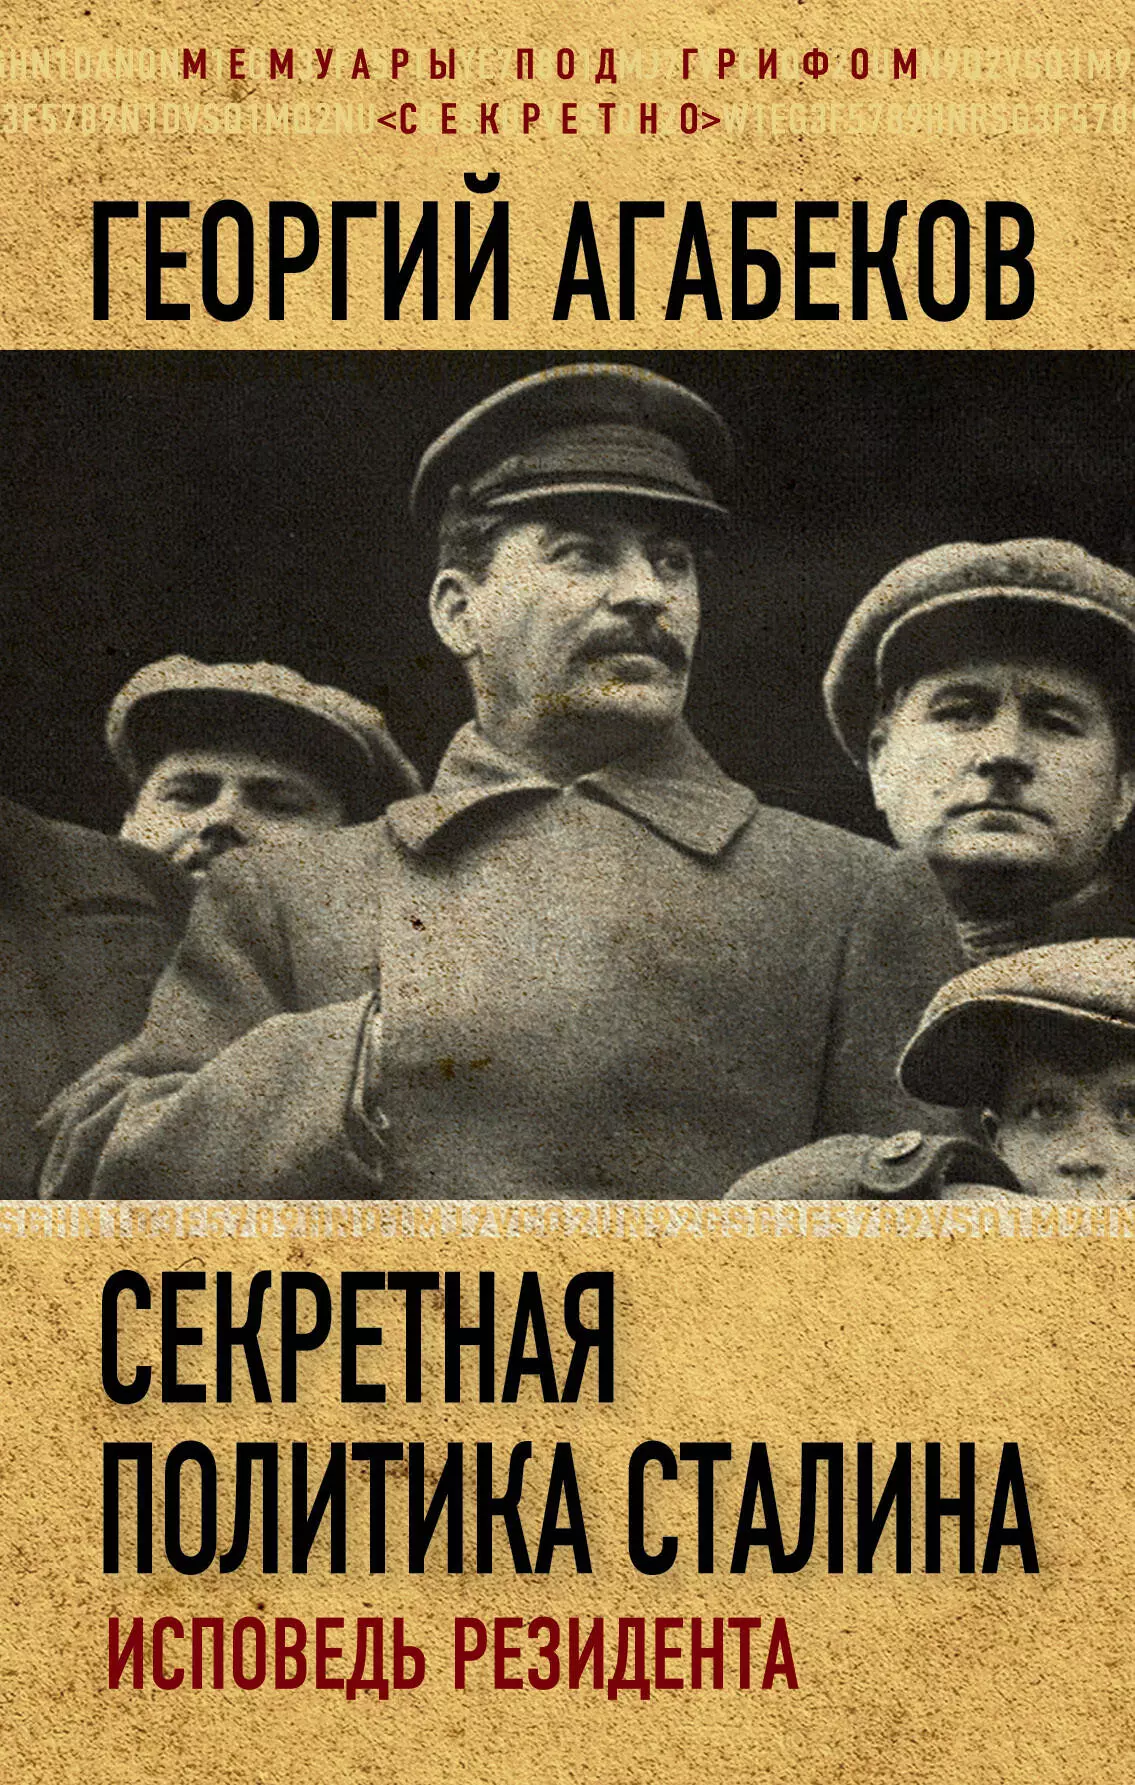 Агабеков Георгий Сергеевич - Секретная политика Сталина. Исповедь резидента